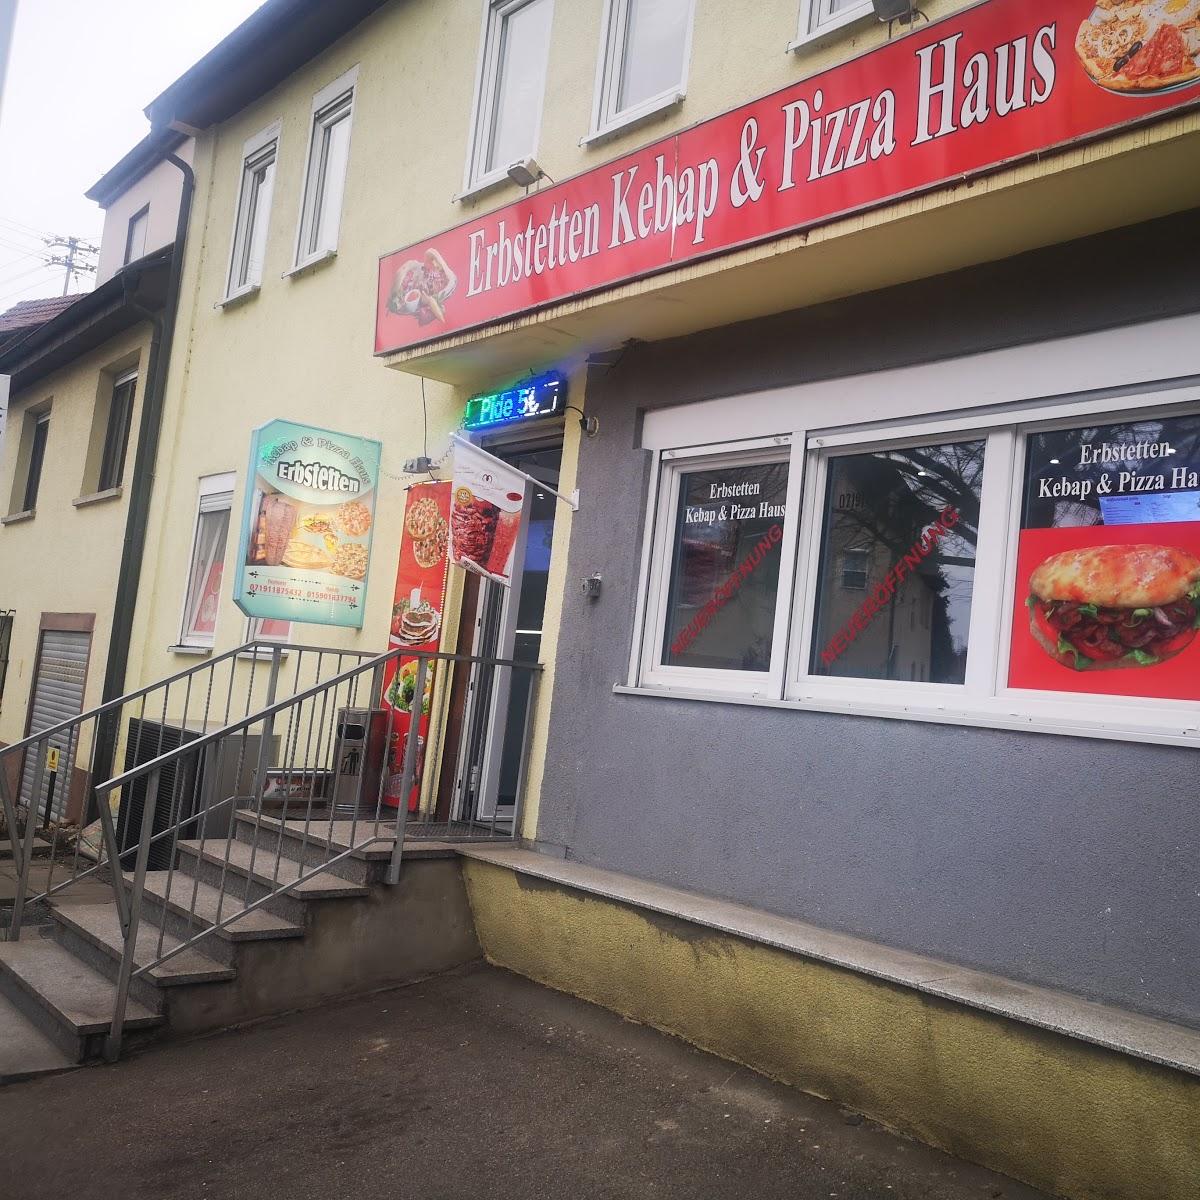 Restaurant "Erbstetten Kebap & Pizzahaus" in  Burgstetten